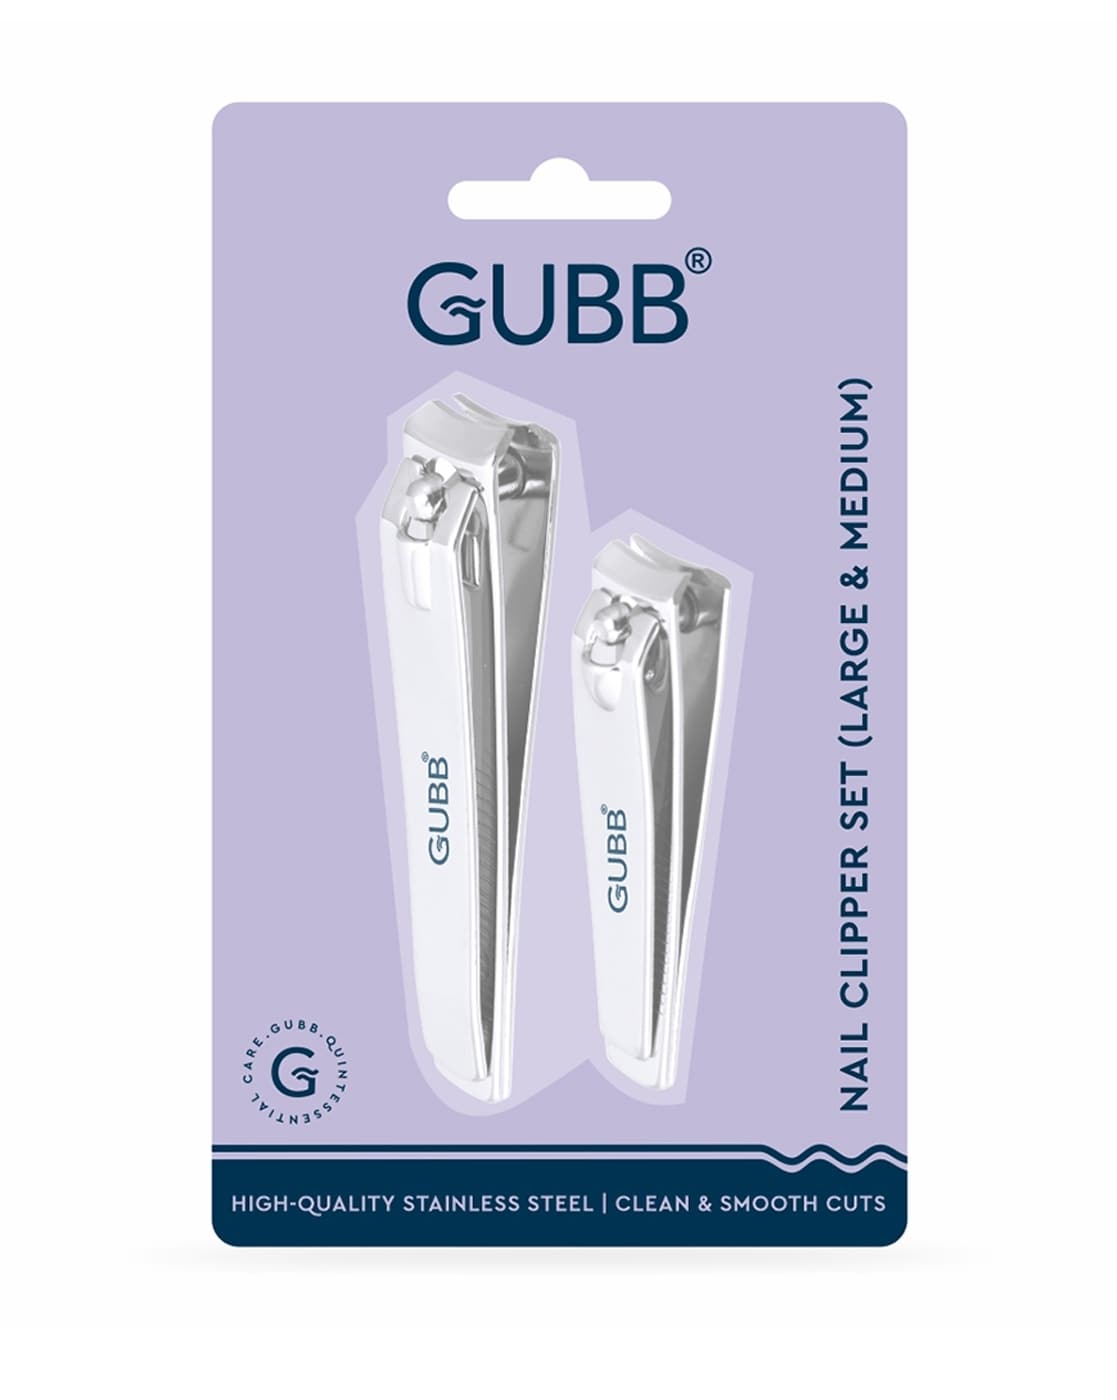 Buy Gubb Nail Care Kit Online at Best Price of Rs 274.5 - bigbasket